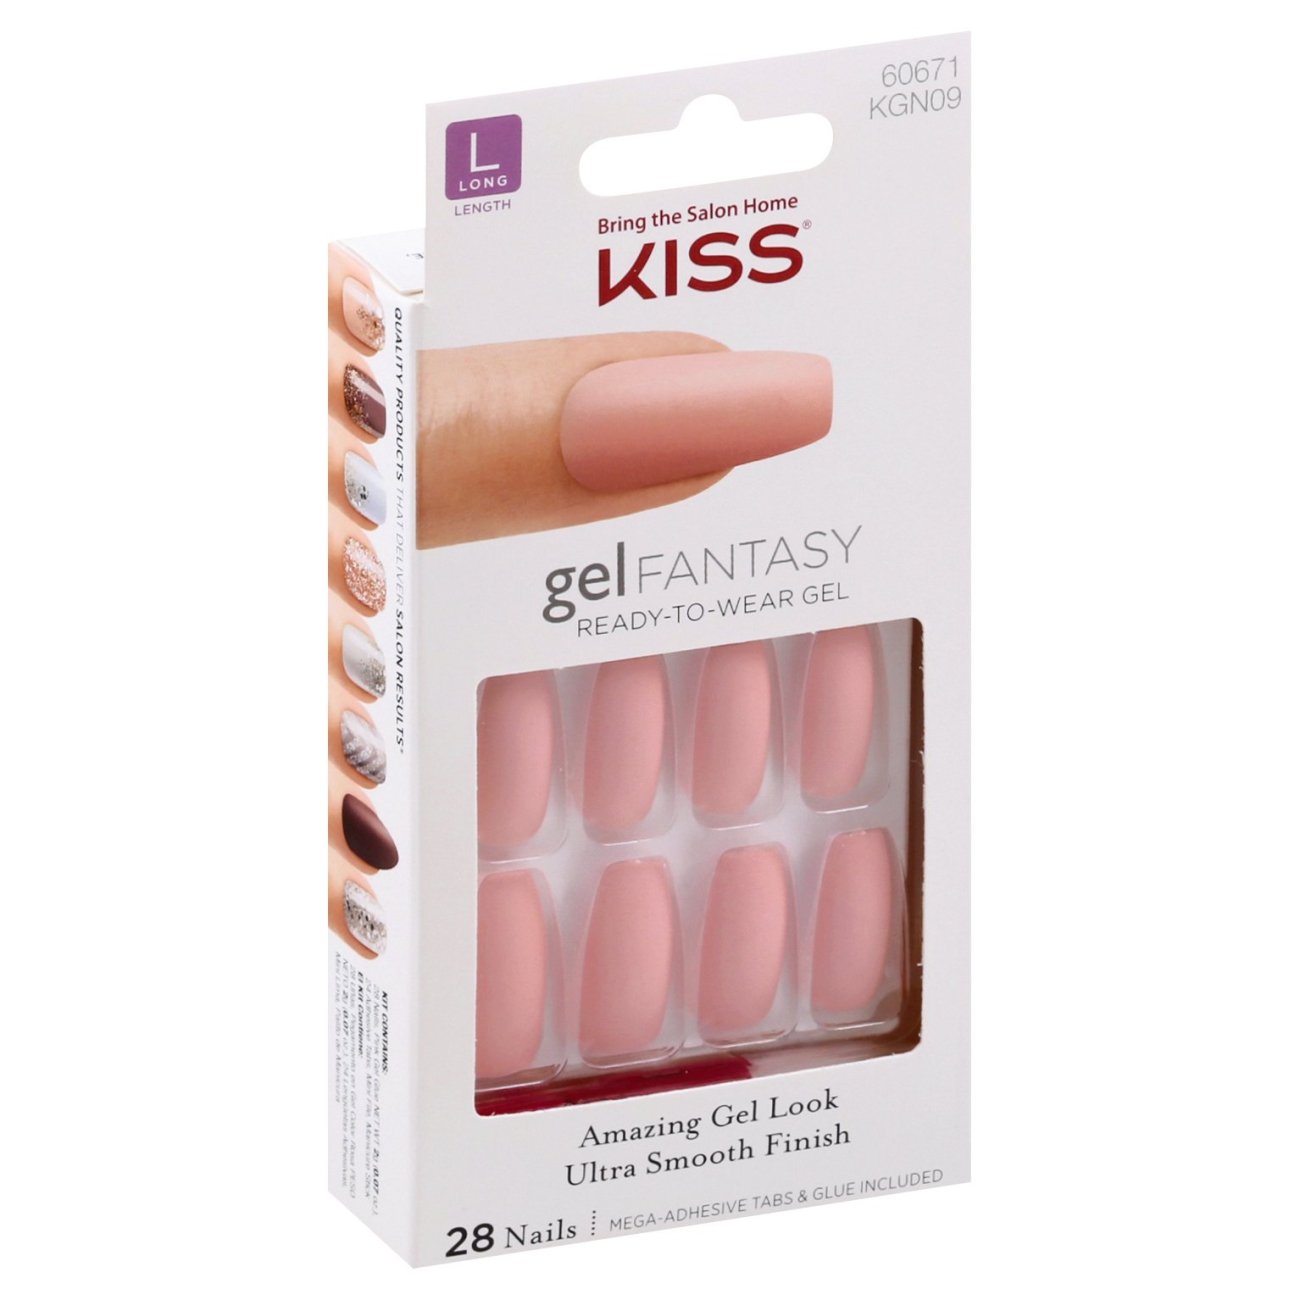 Kiss gel FANTASY Nails - Ab Fav - Shop Nail Sets at H-E-B